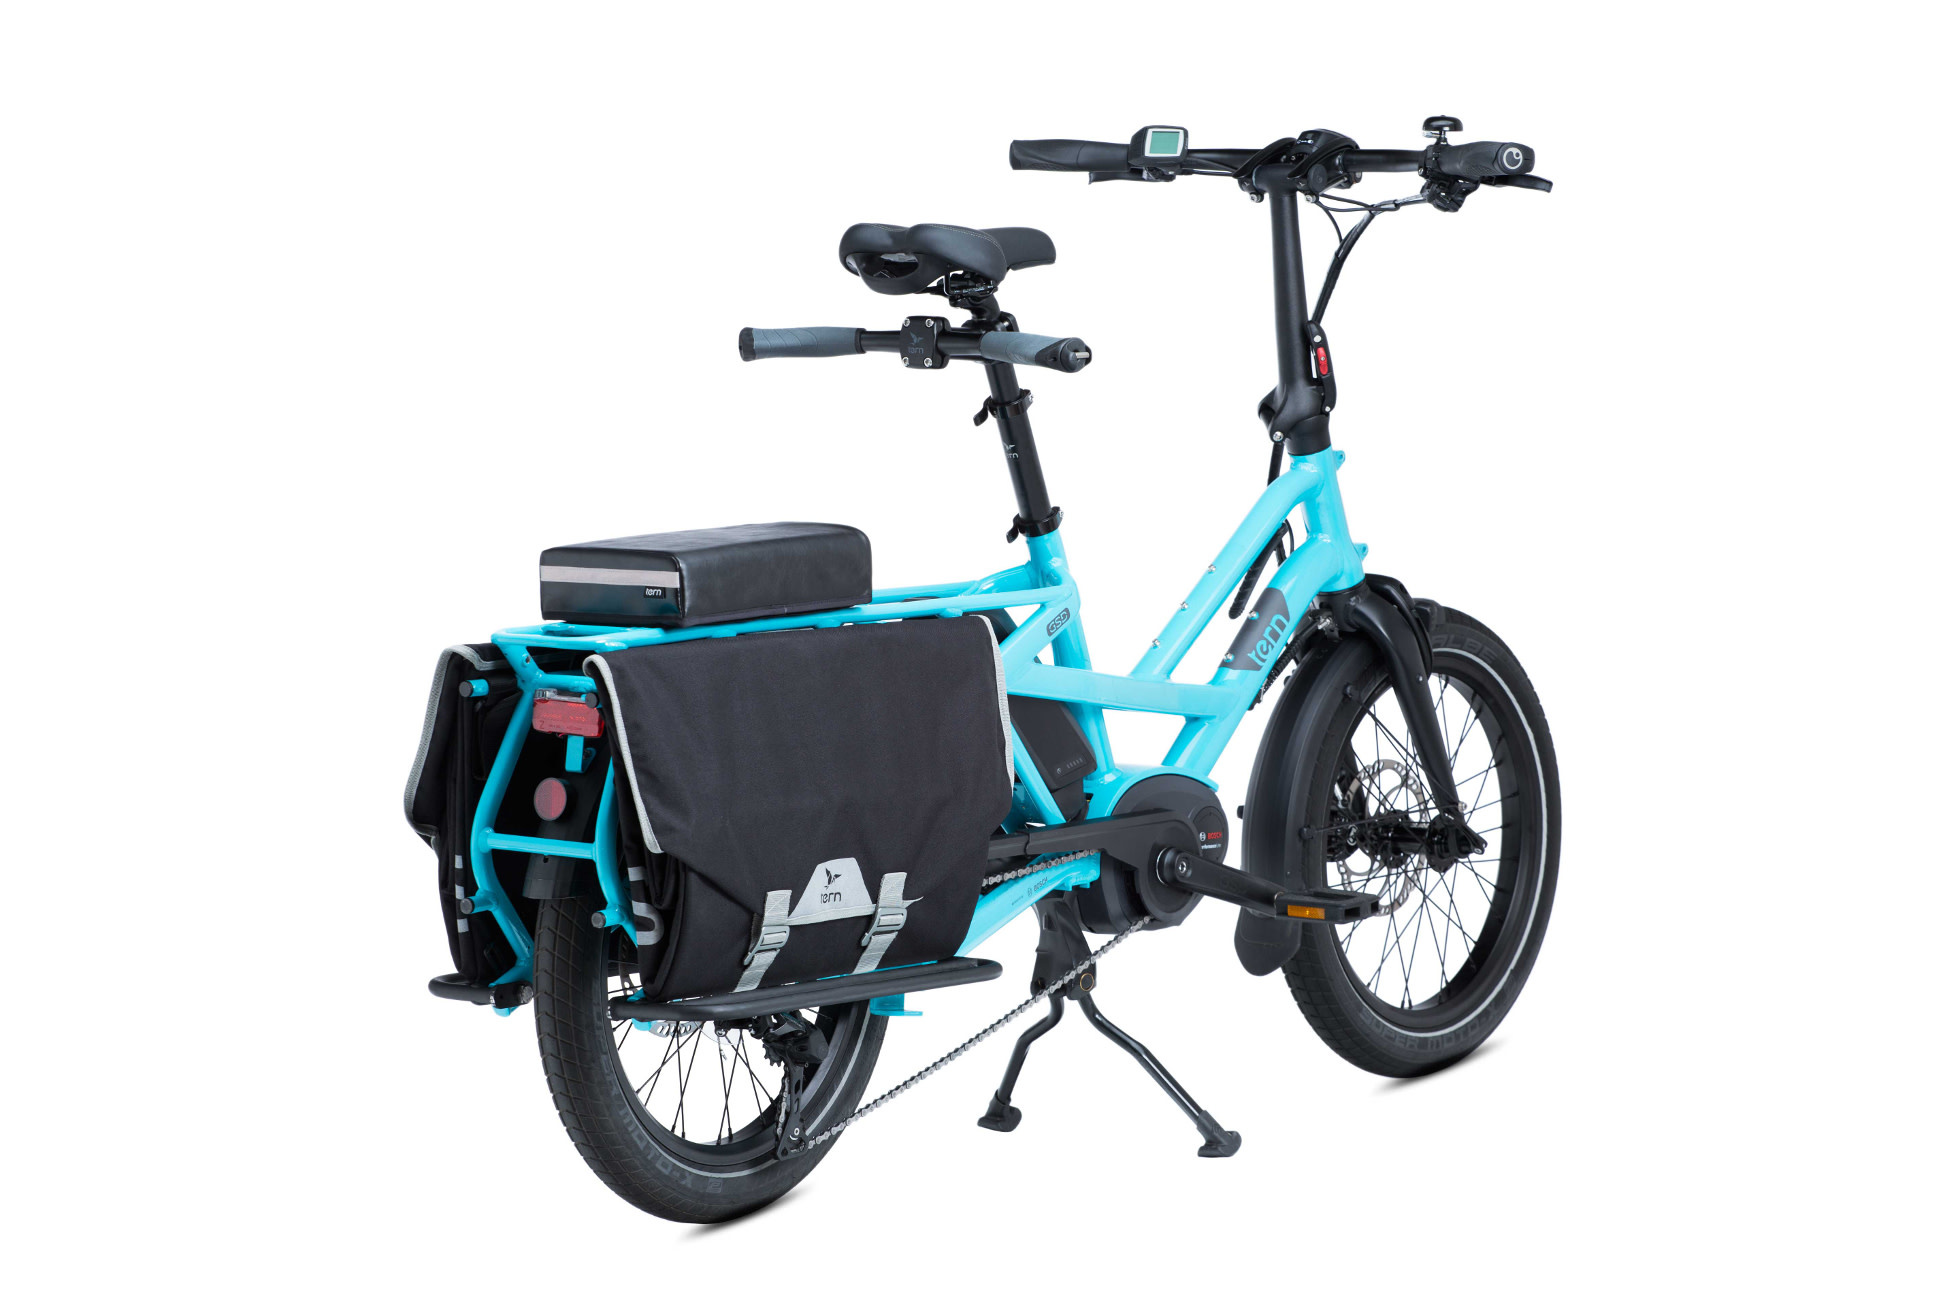 Sidekick Seat Pad: Seat pad for Tern cargo bikes